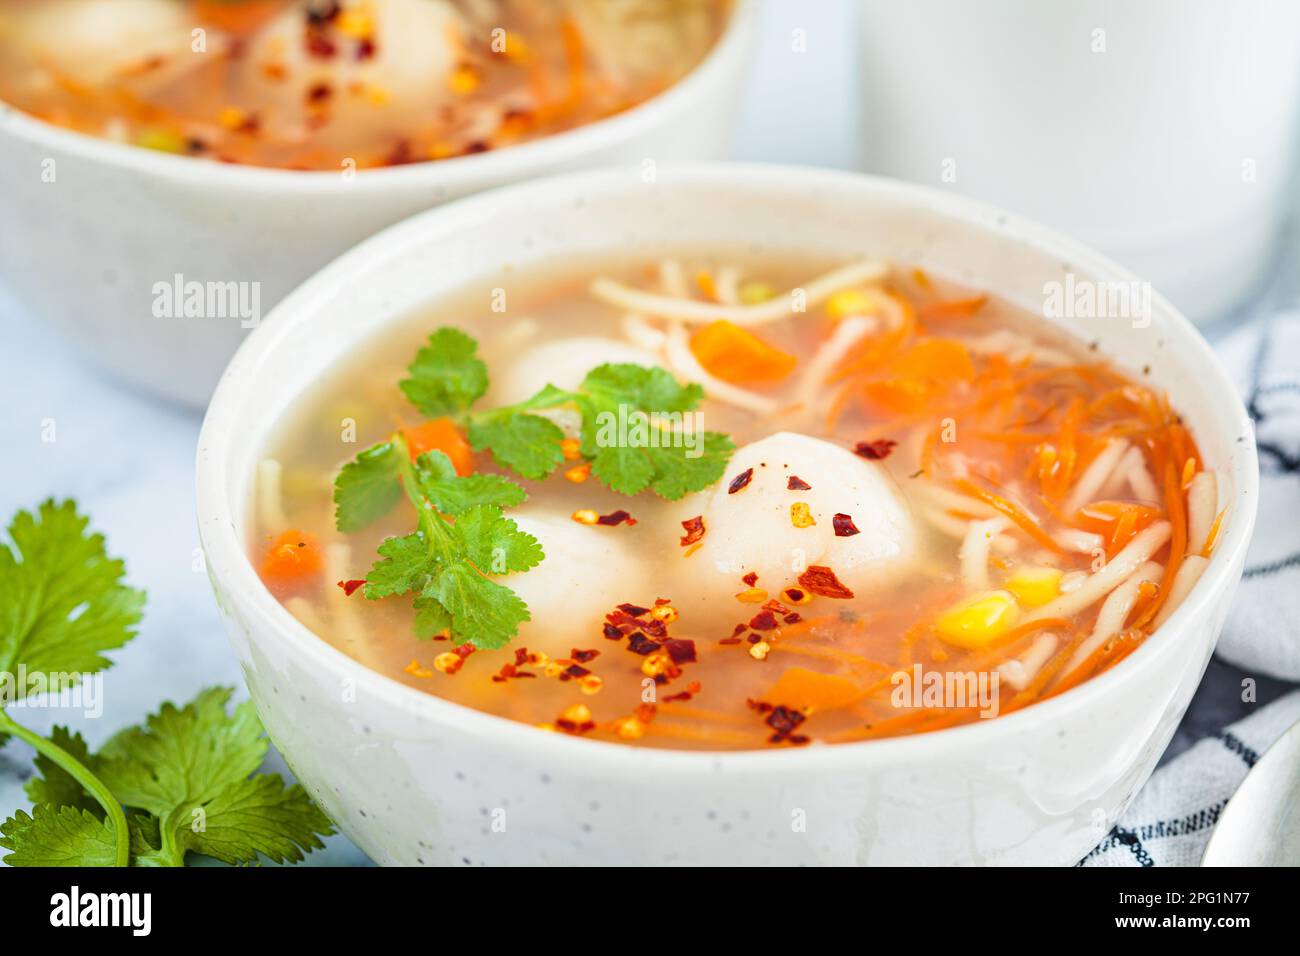 Zuppa di palle di patate con tagliatelle e verdure in un recipiente bianco, fondo bianco, primo piano. Concetto di cibo vegano. Foto Stock